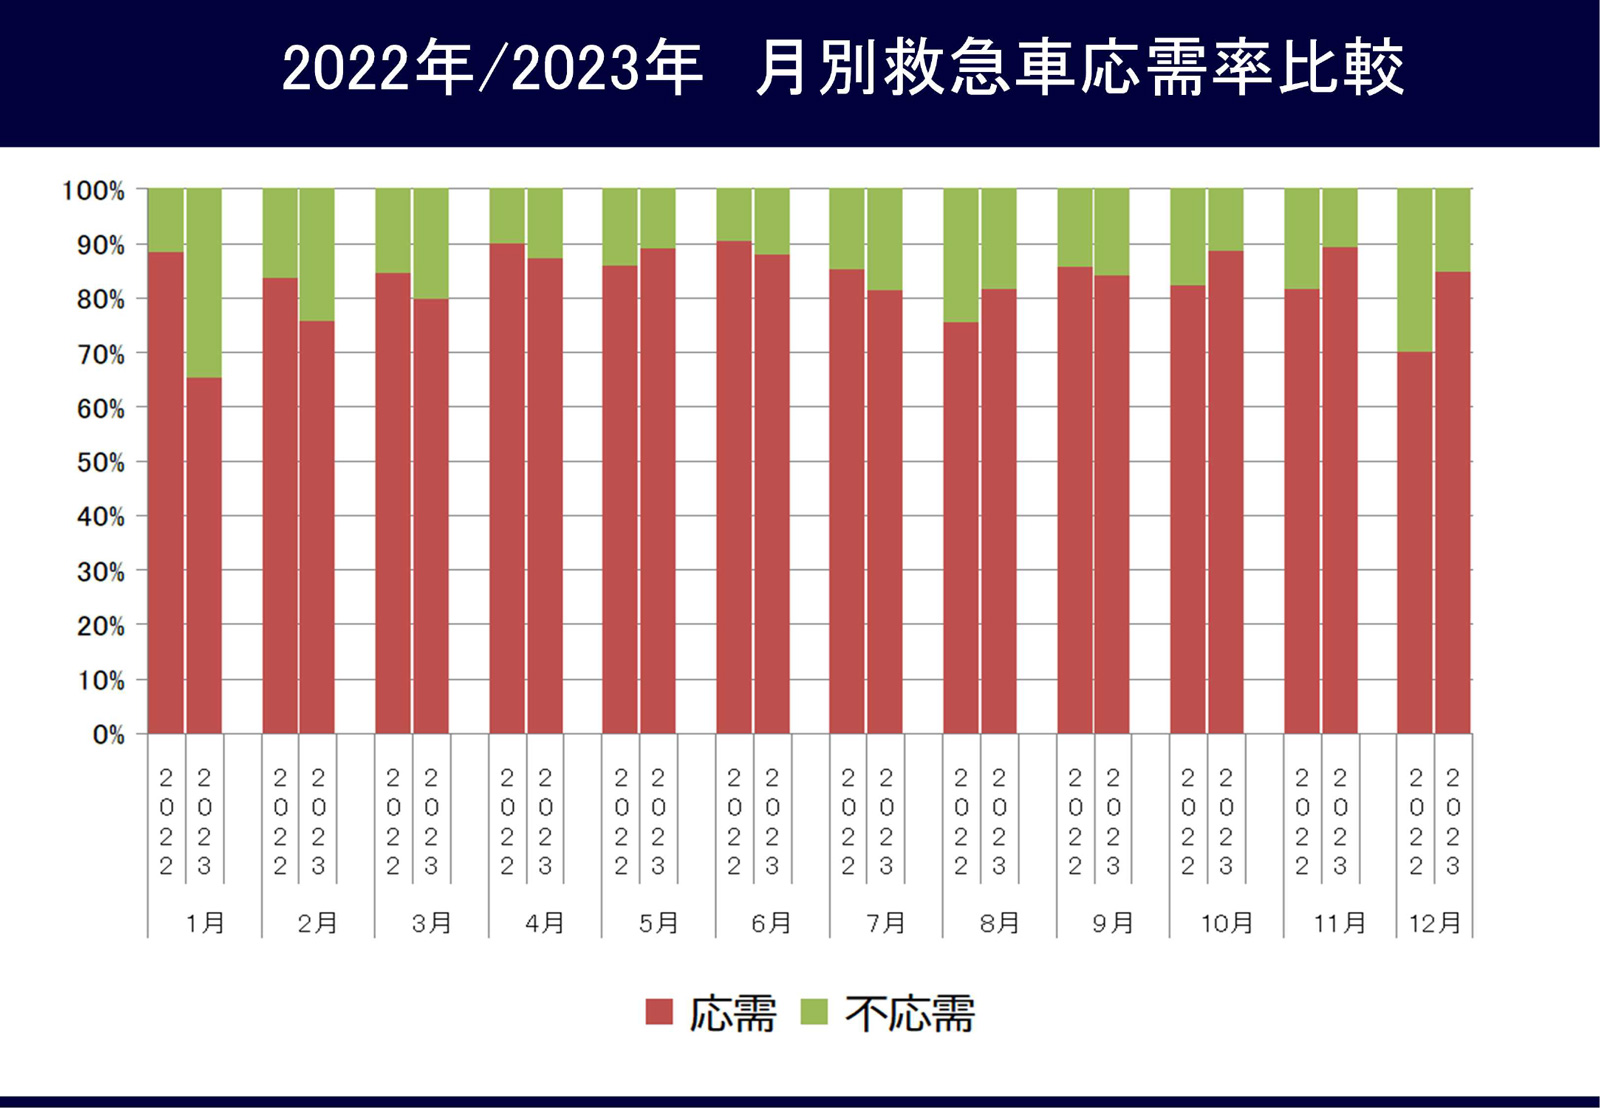 図4 2022年/2023年月別救急車応需率比較
  .jpg